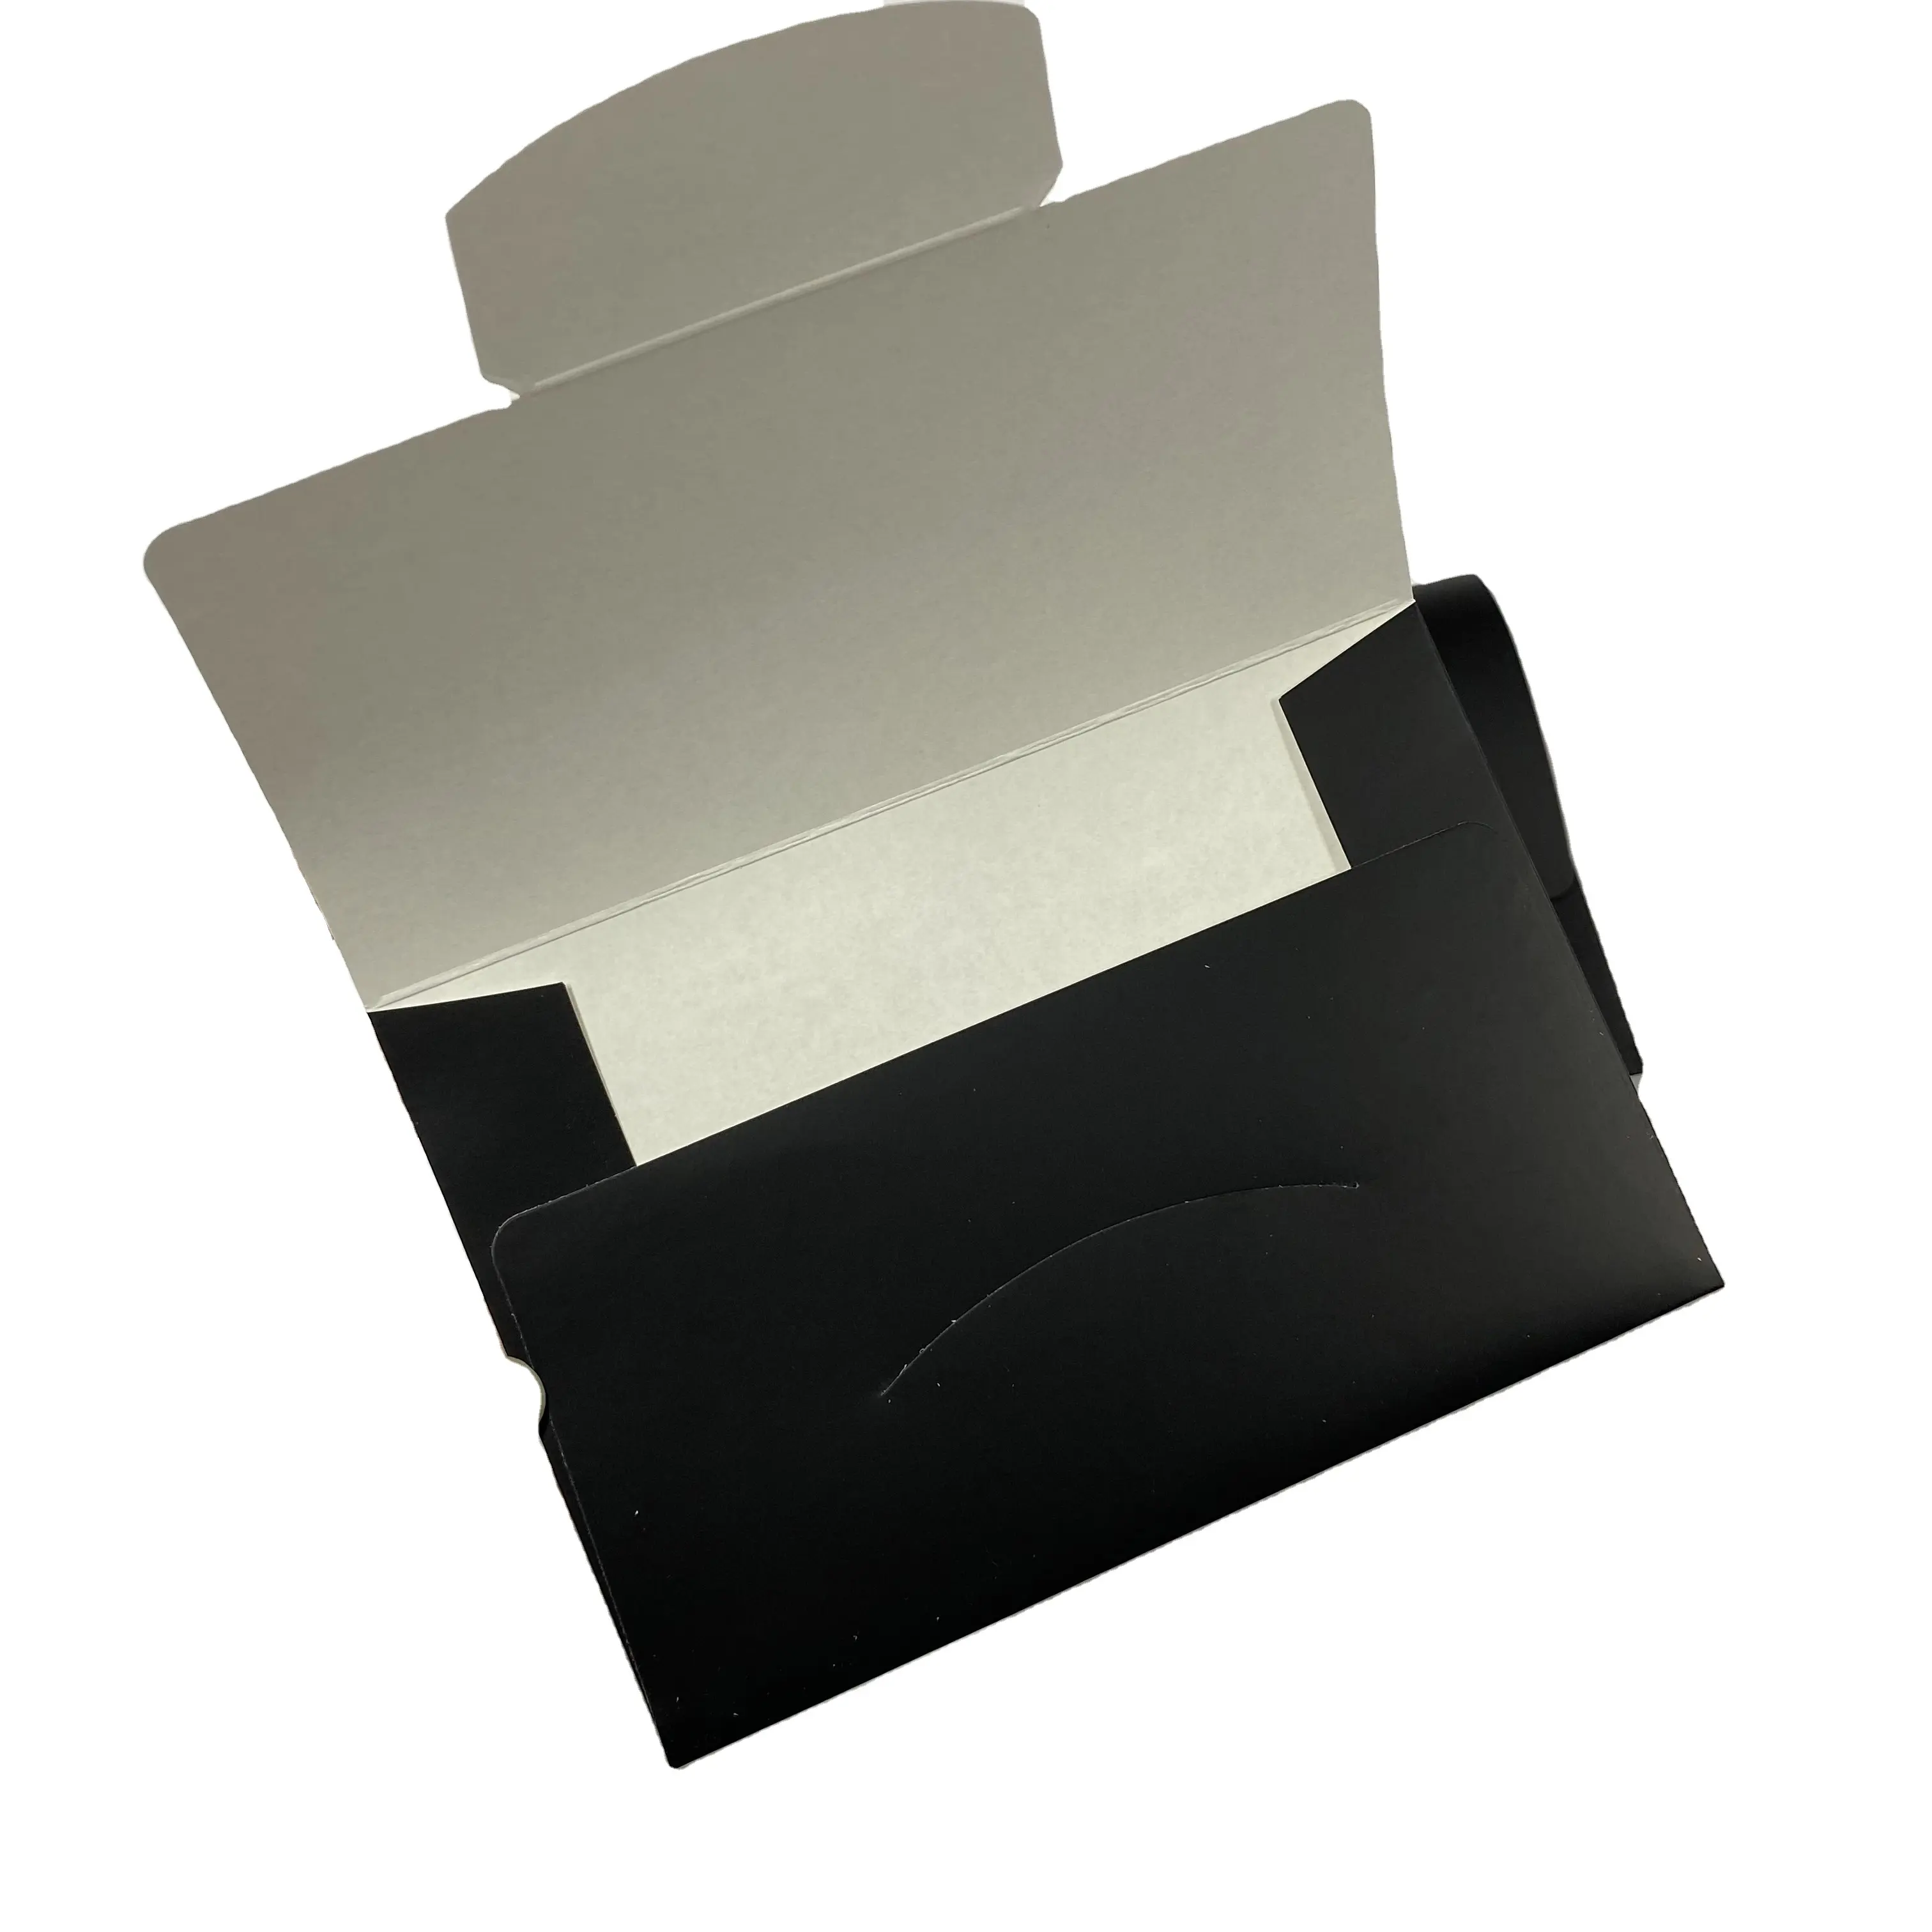 New Trend Custom Design Druck verpackung schwarze Farbe weiß Karton Papier umschlag mit Einst eck